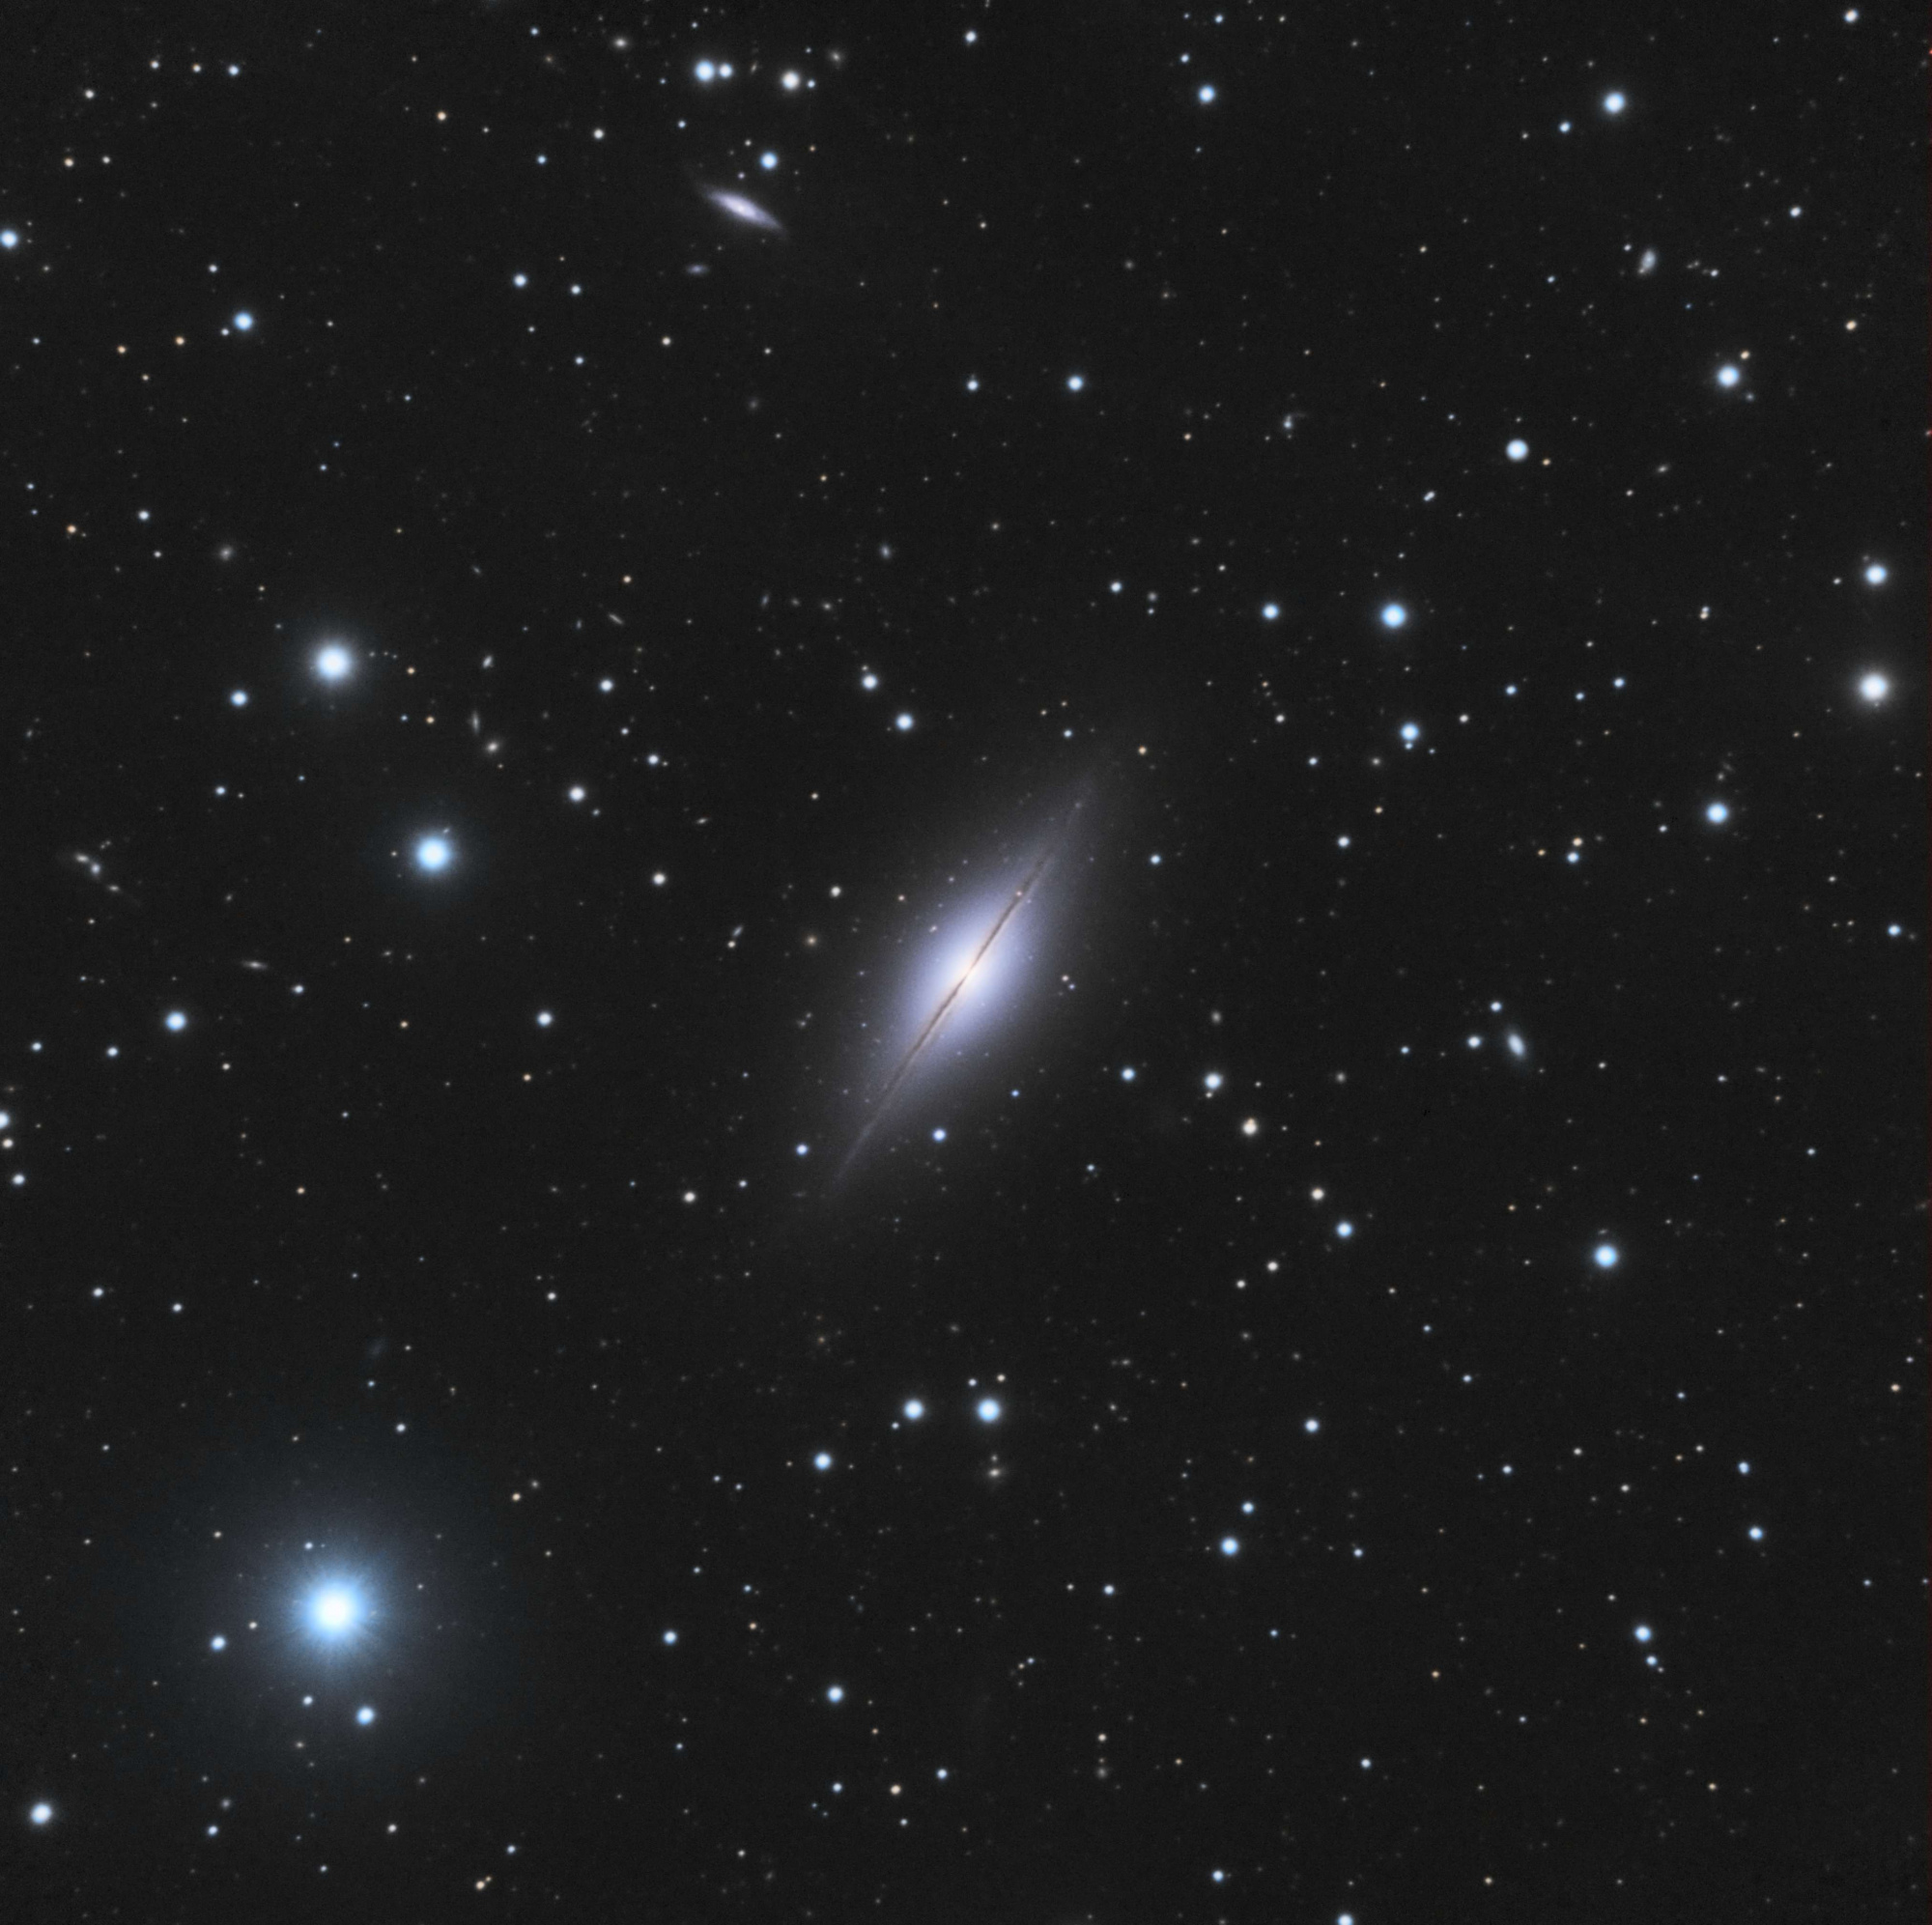 5c2a0a1045ba6_NGC7814.thumb.jpg.1735d26c616c8c2236b301310b8d60db.jpg